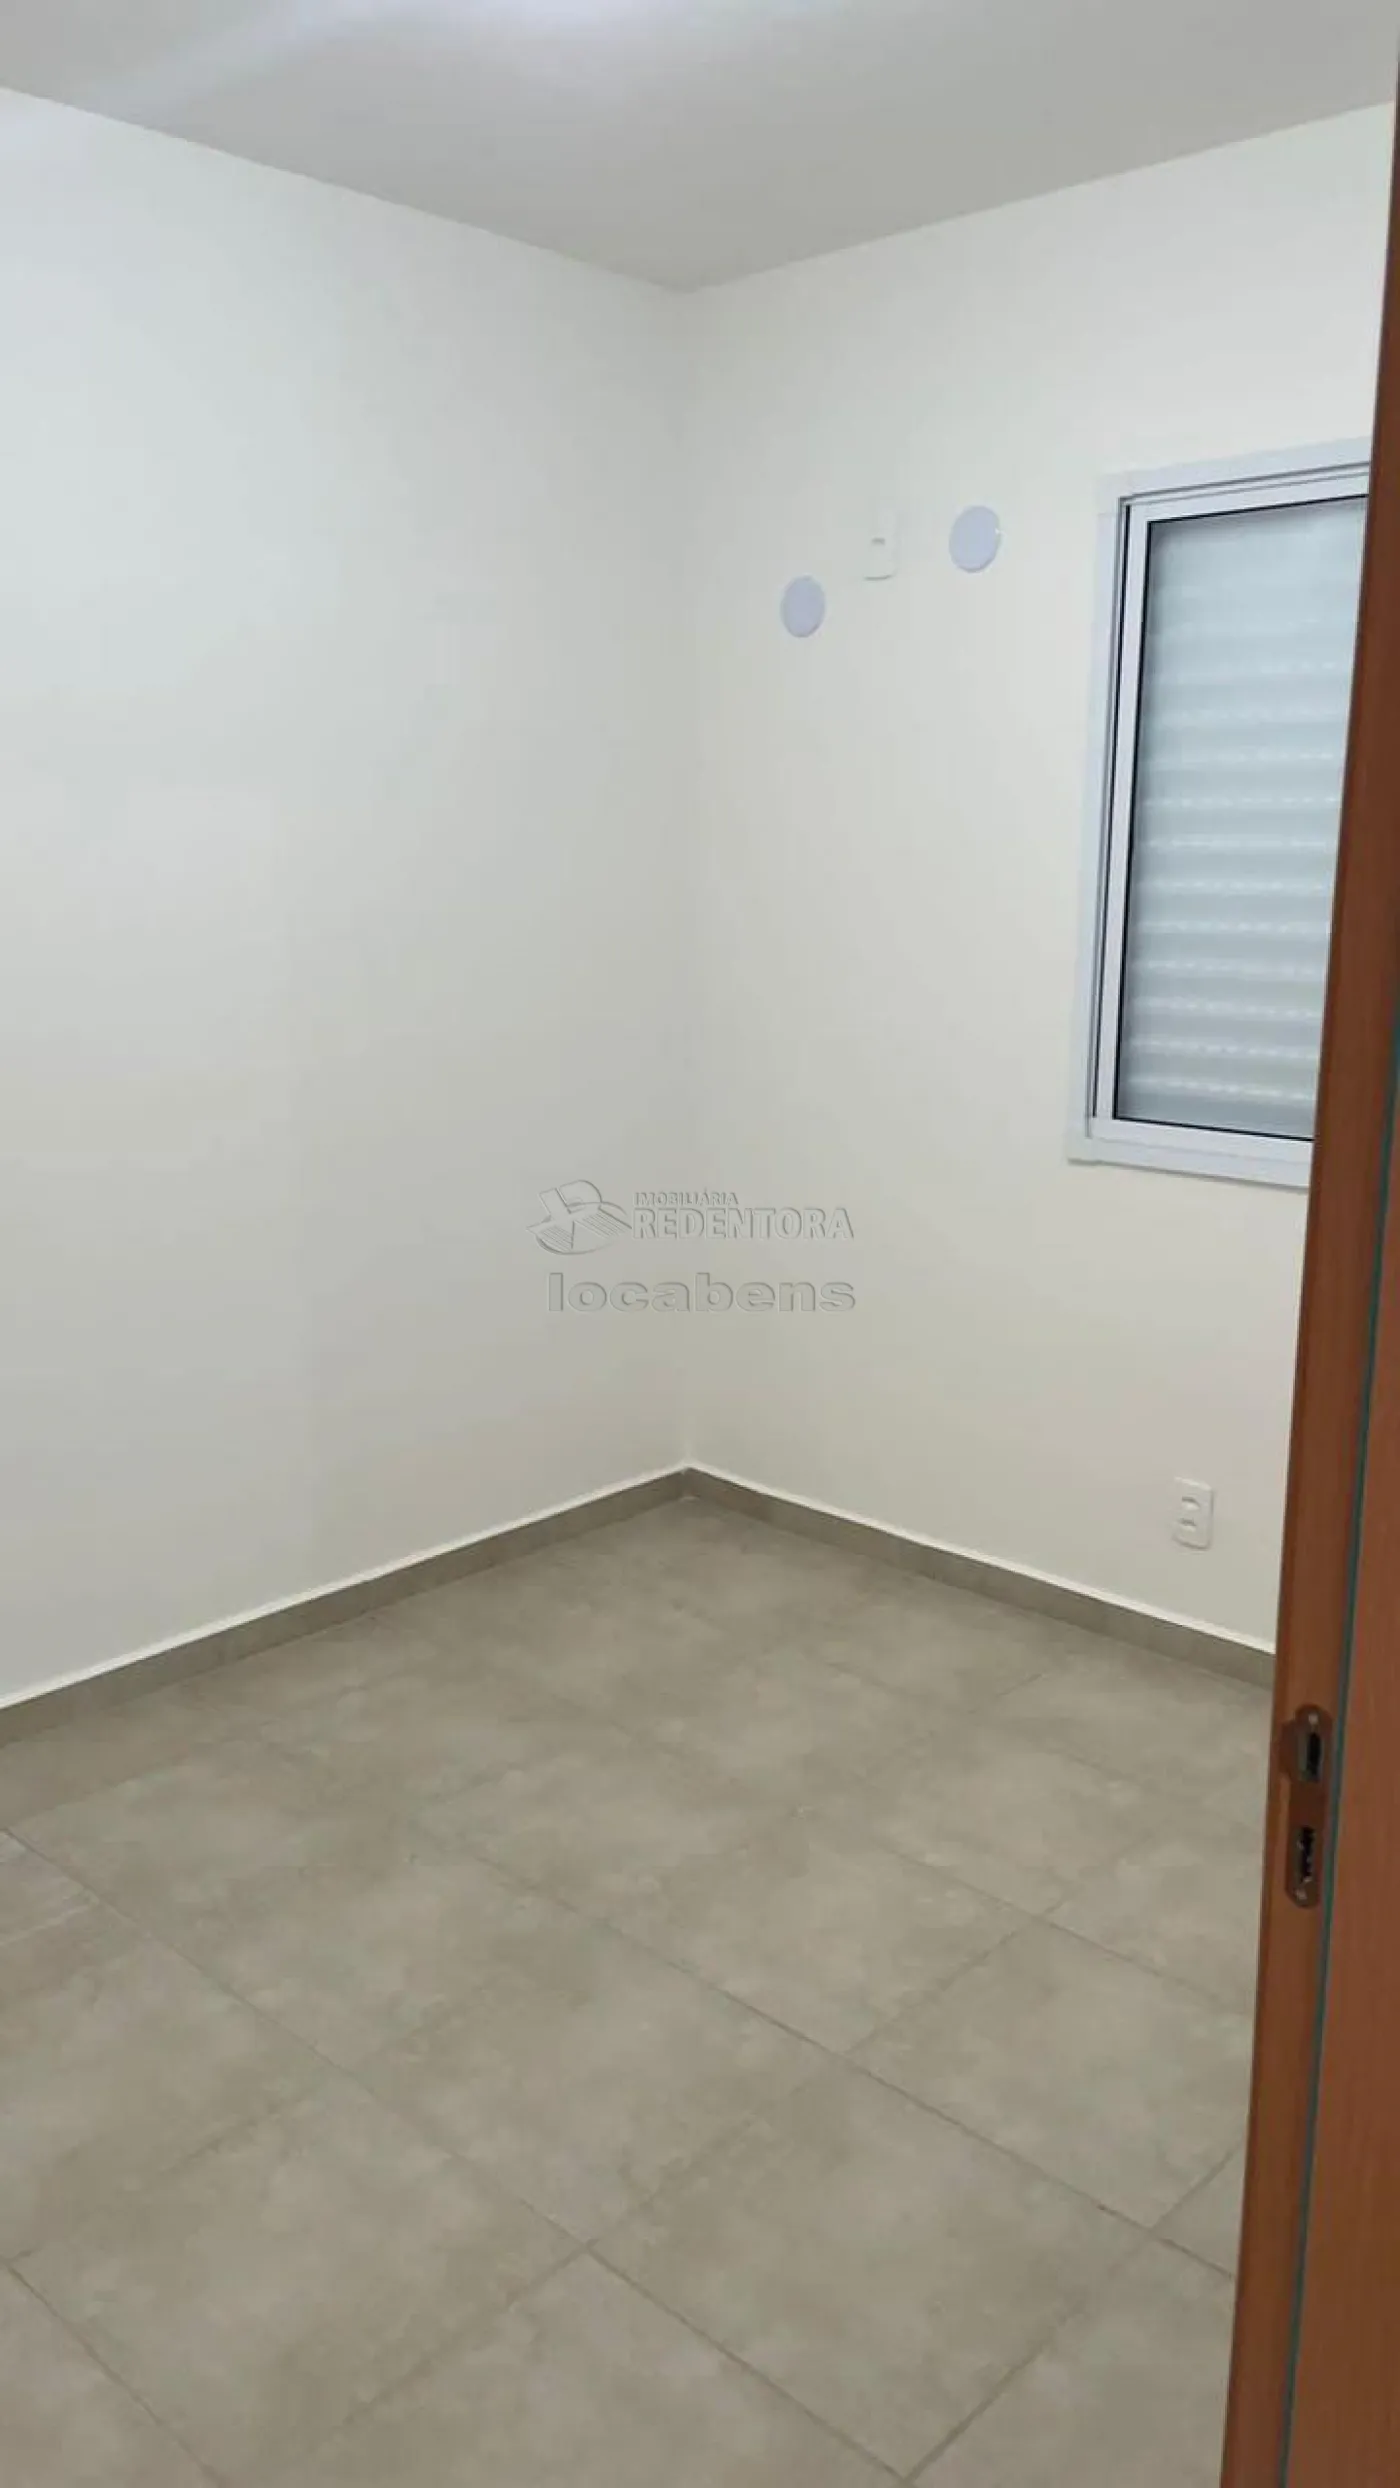 Alugar Apartamento / Padrão em São José do Rio Preto apenas R$ 850,00 - Foto 6